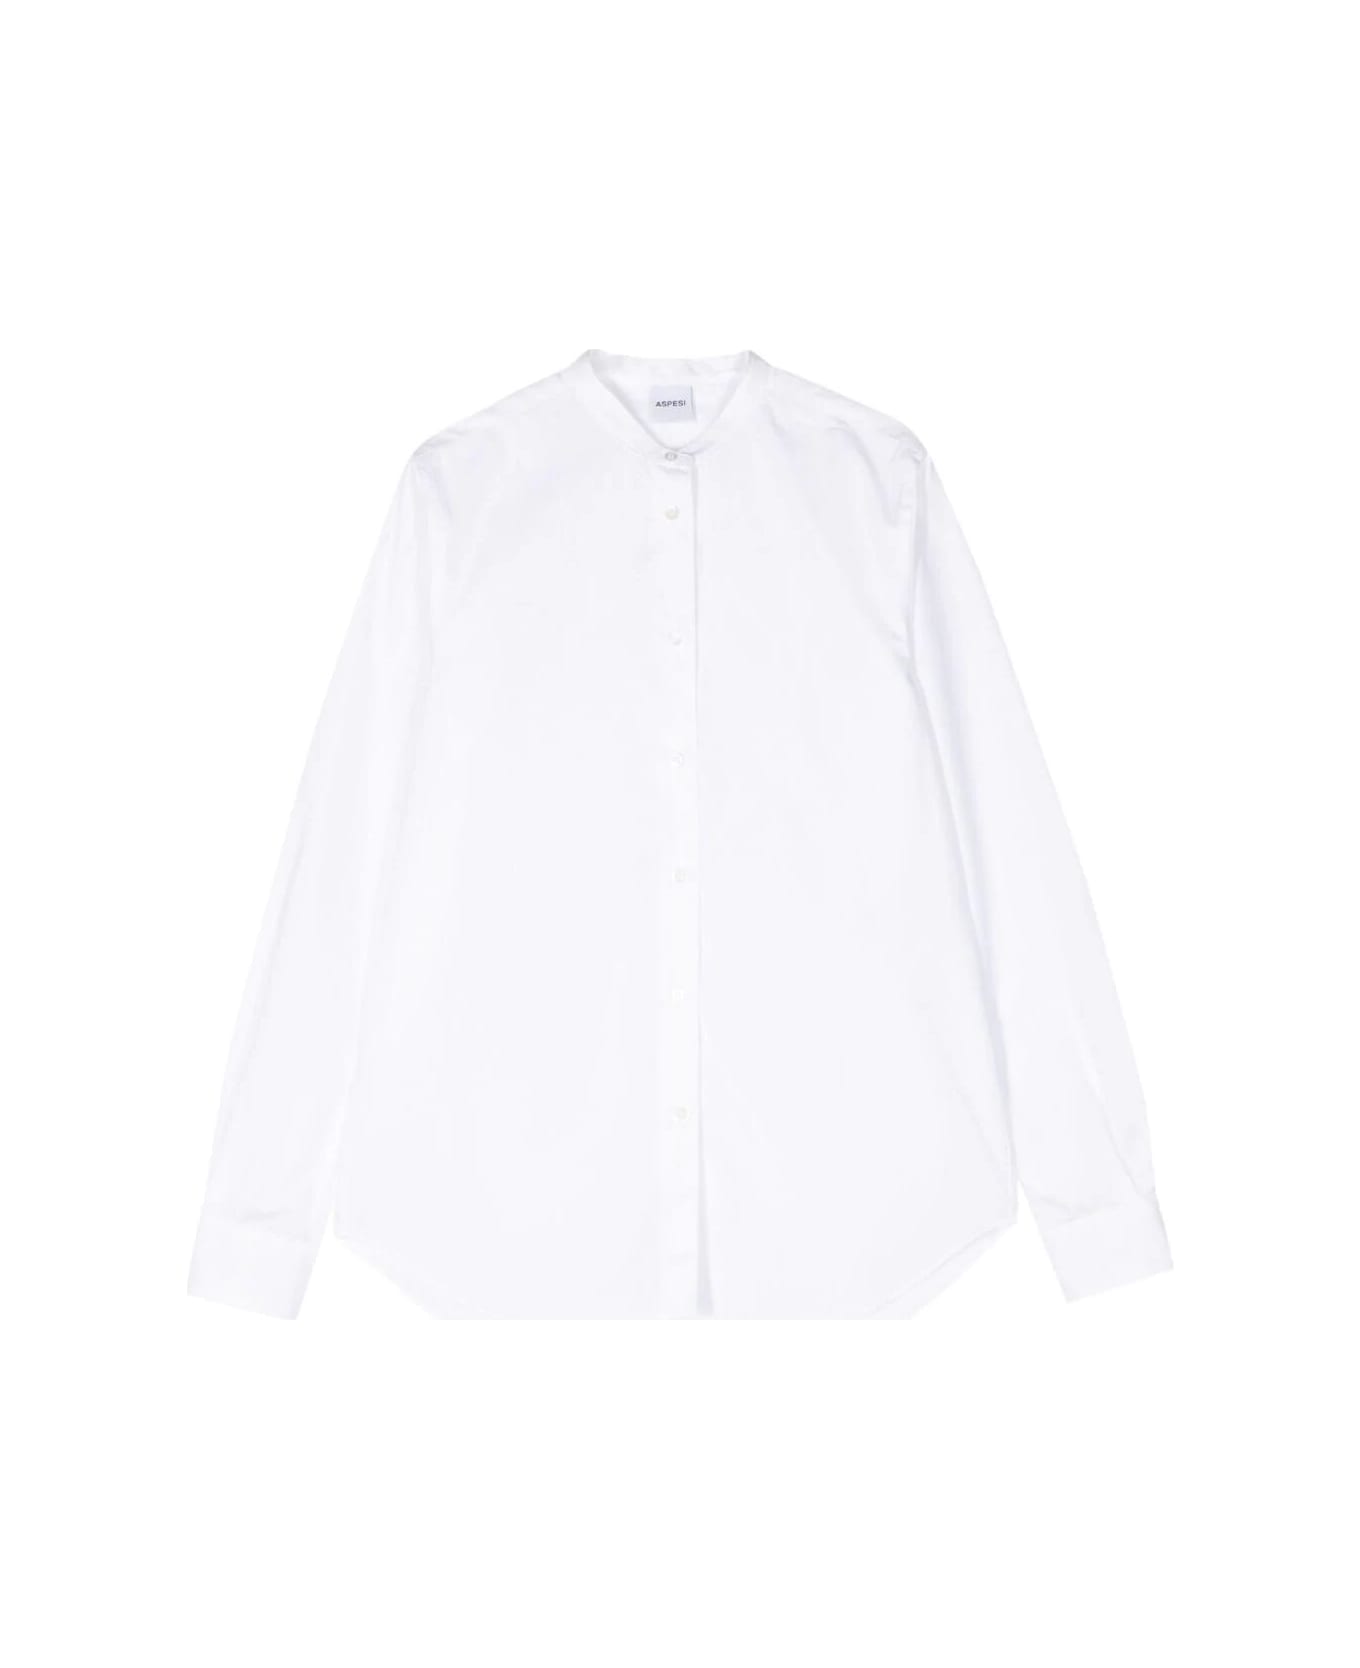 Aspesi Mod 5416 Shirt - White シャツ